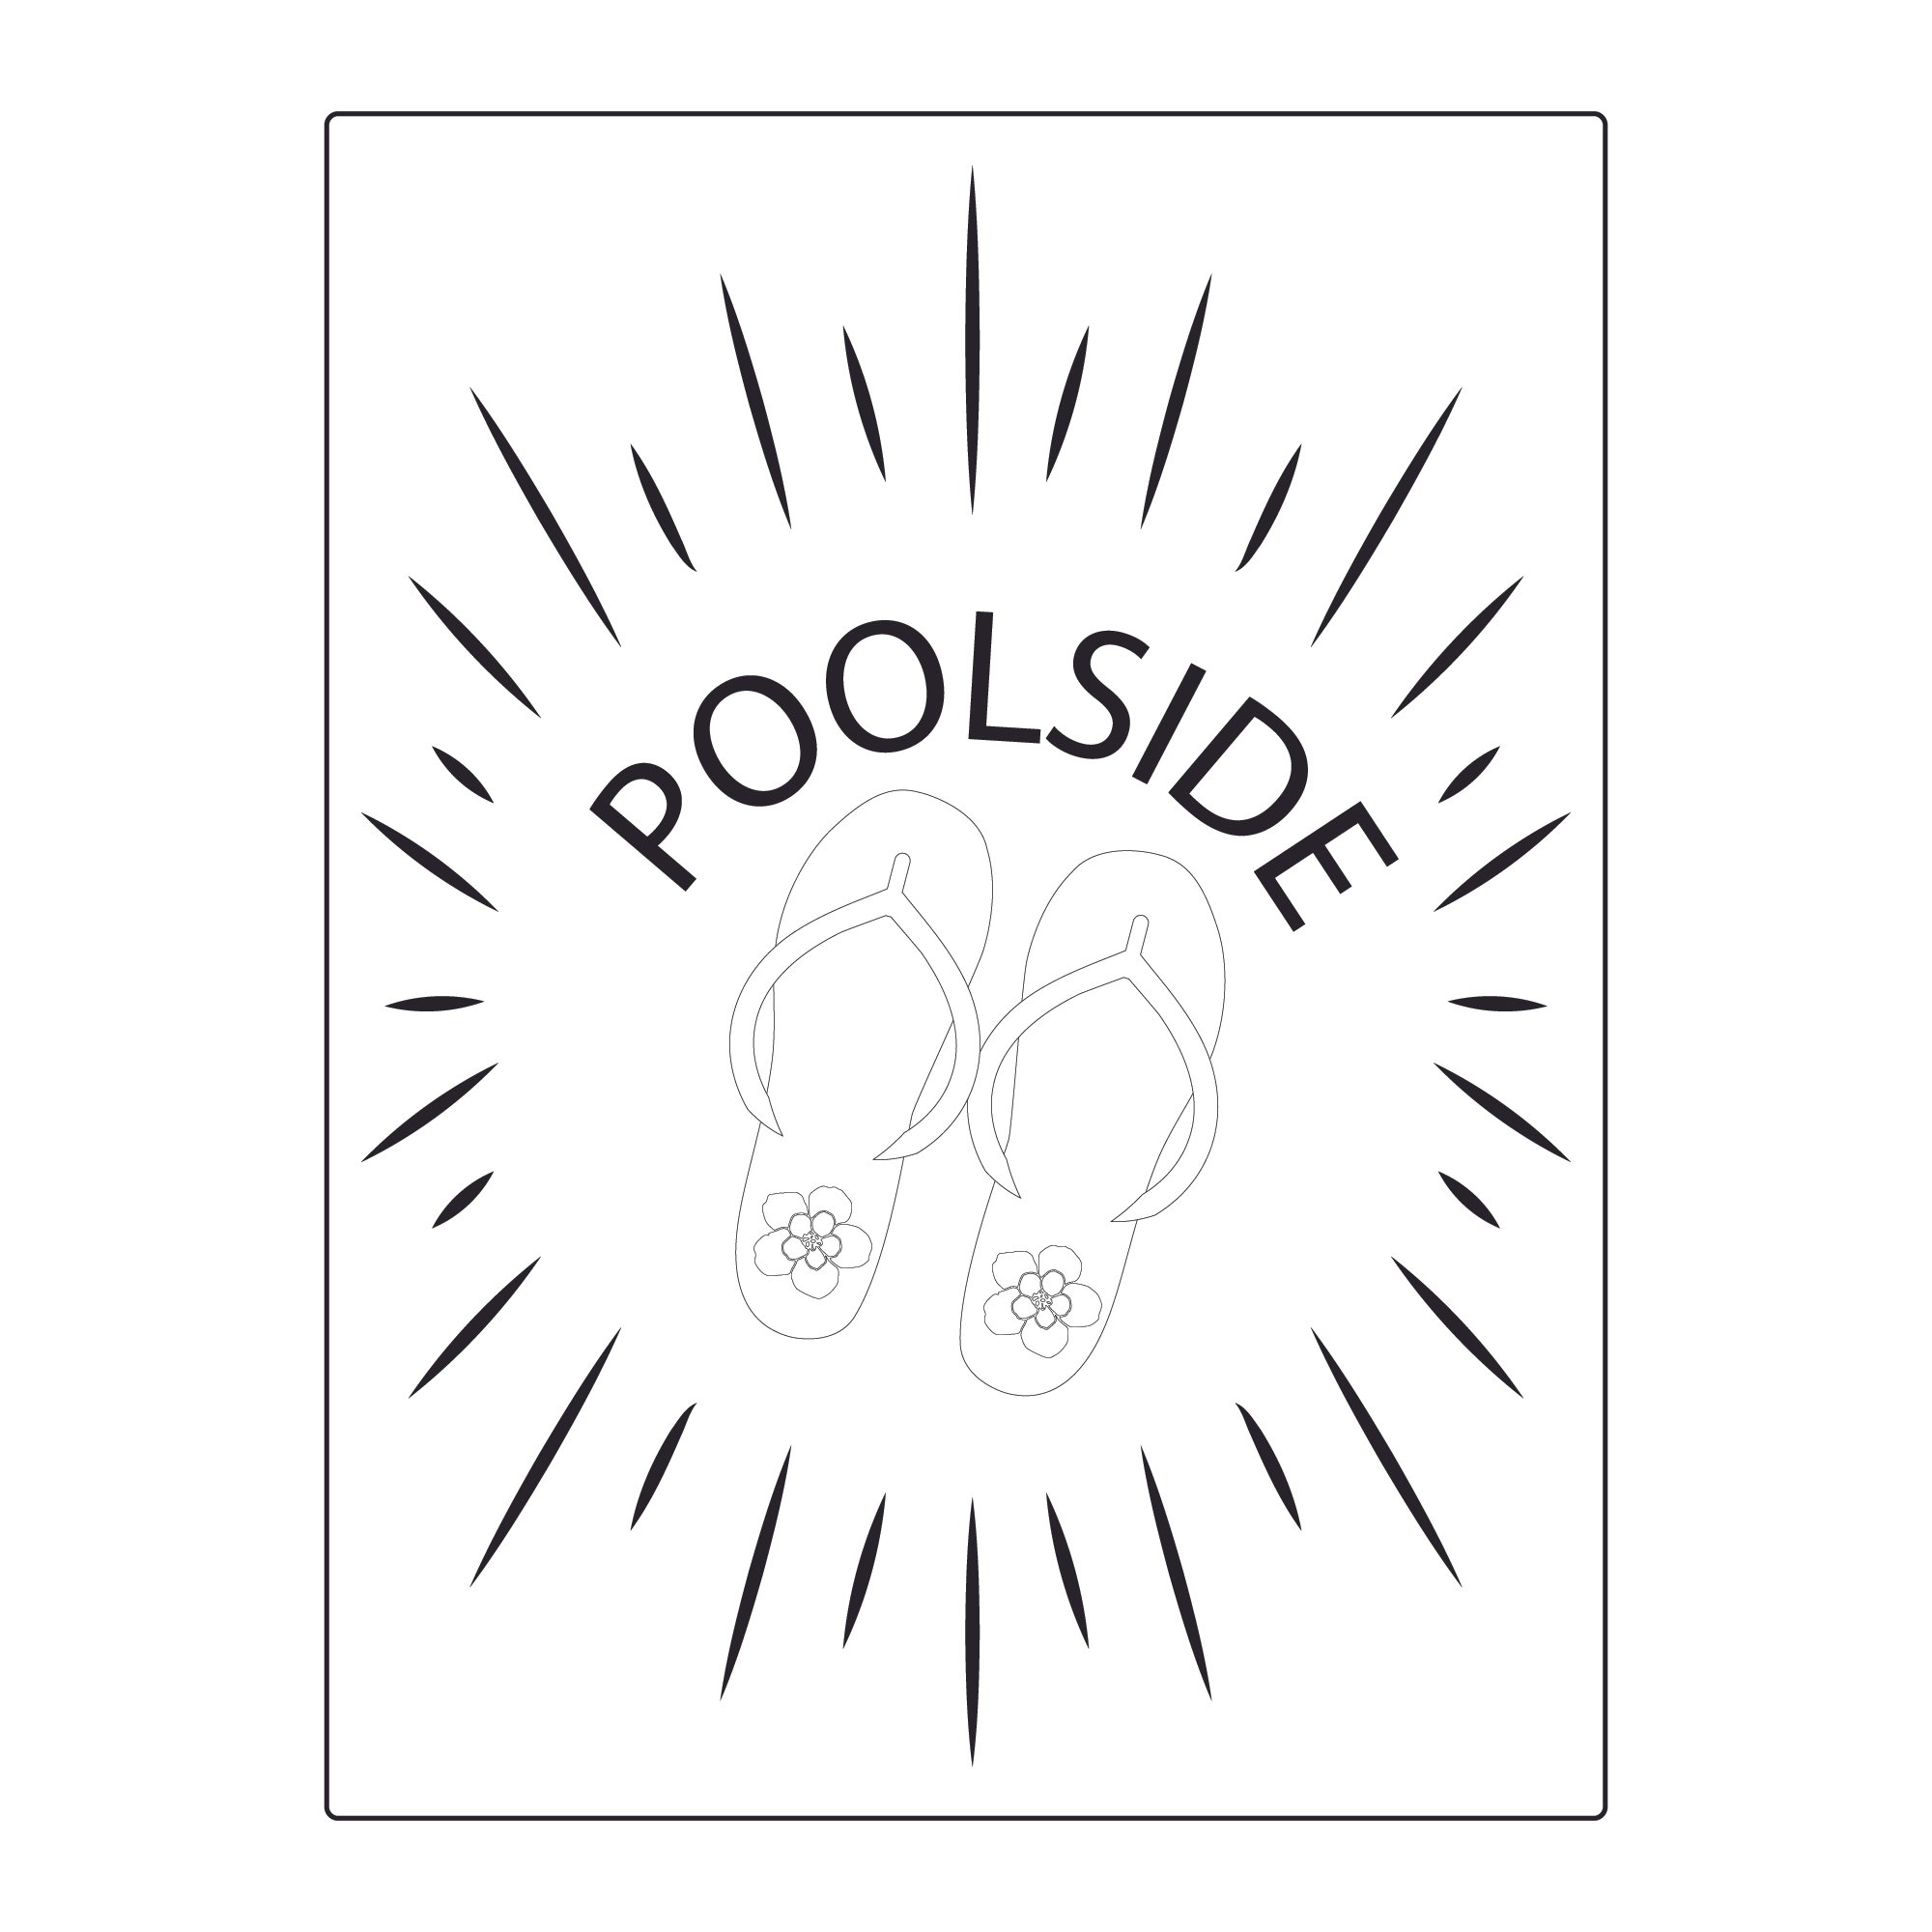 Poolside-14.jpg